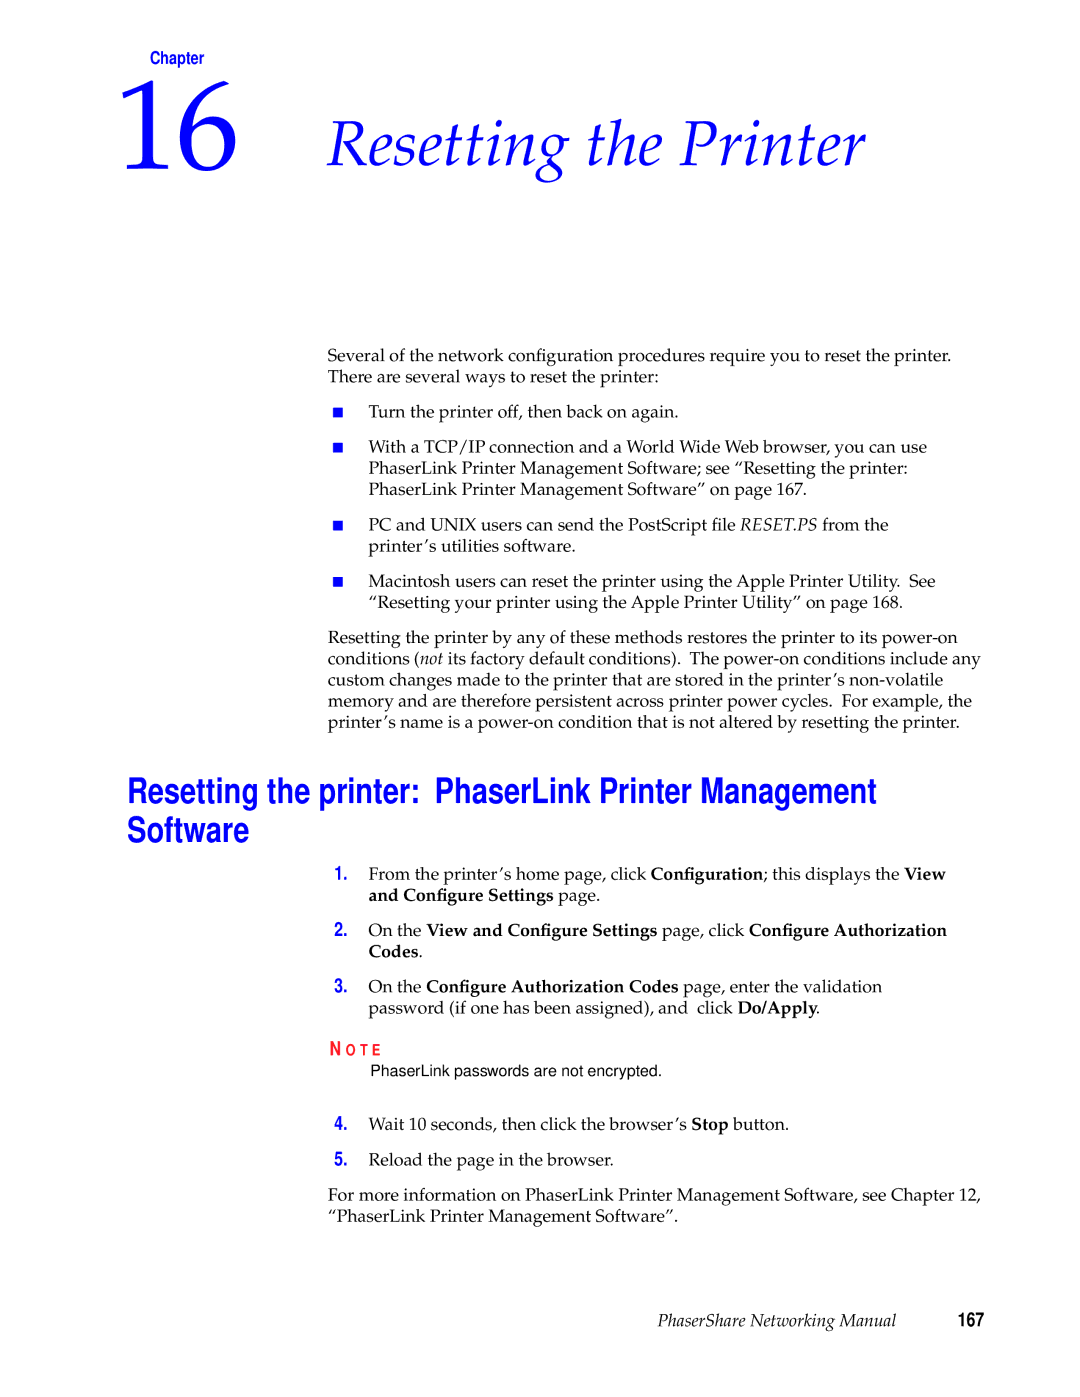 Xerox 840, 780, 360 manual Resetting the Printer, 167 